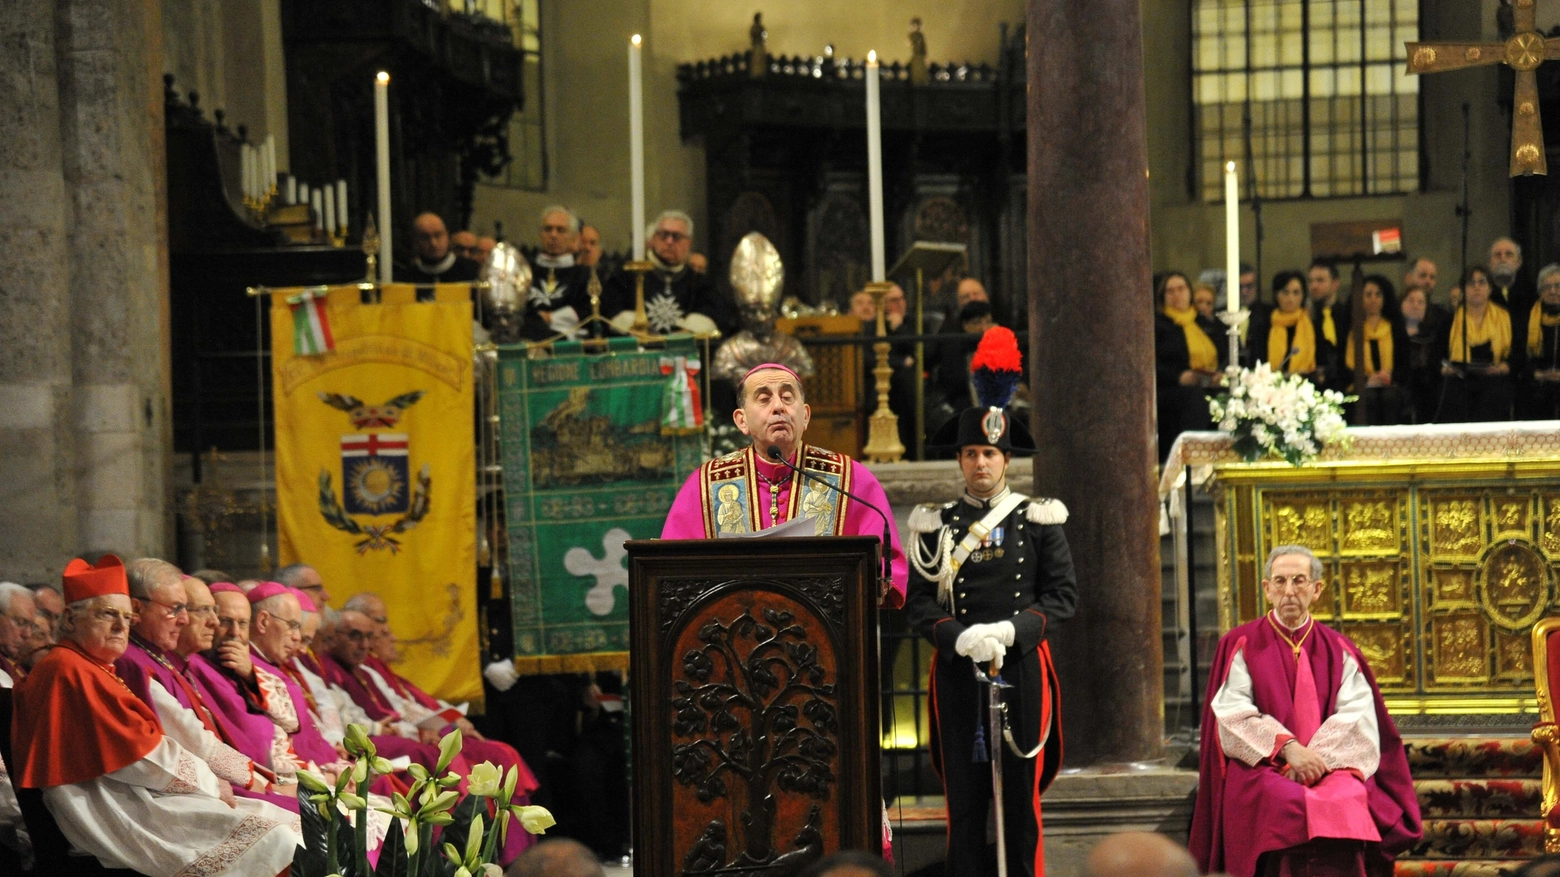 L'arcivescovo Mario Delpini durante il discorso in Duomo